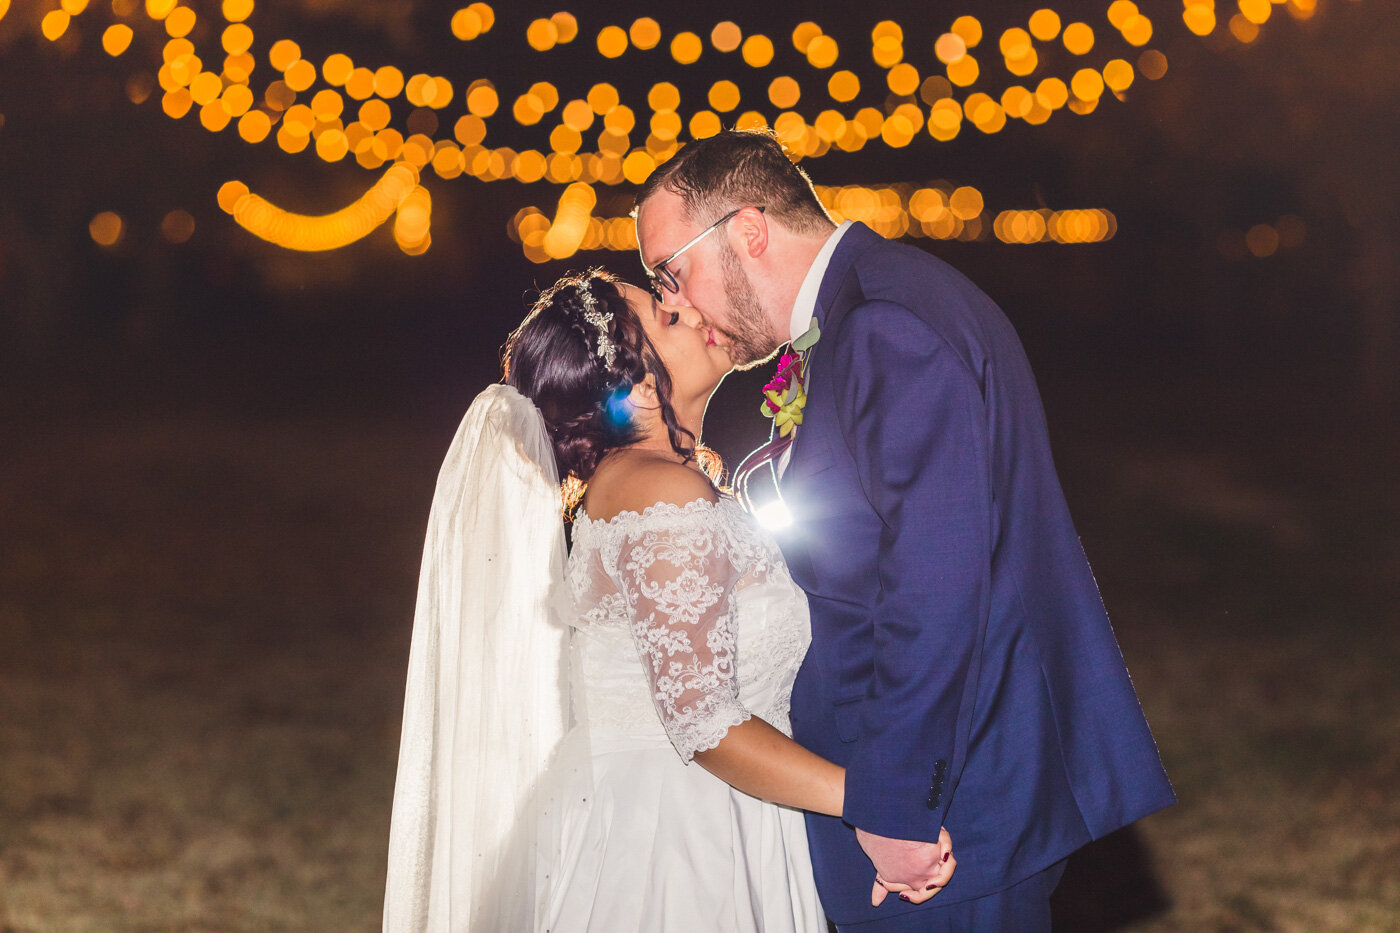 twinkle-lights-night-wedding-photo